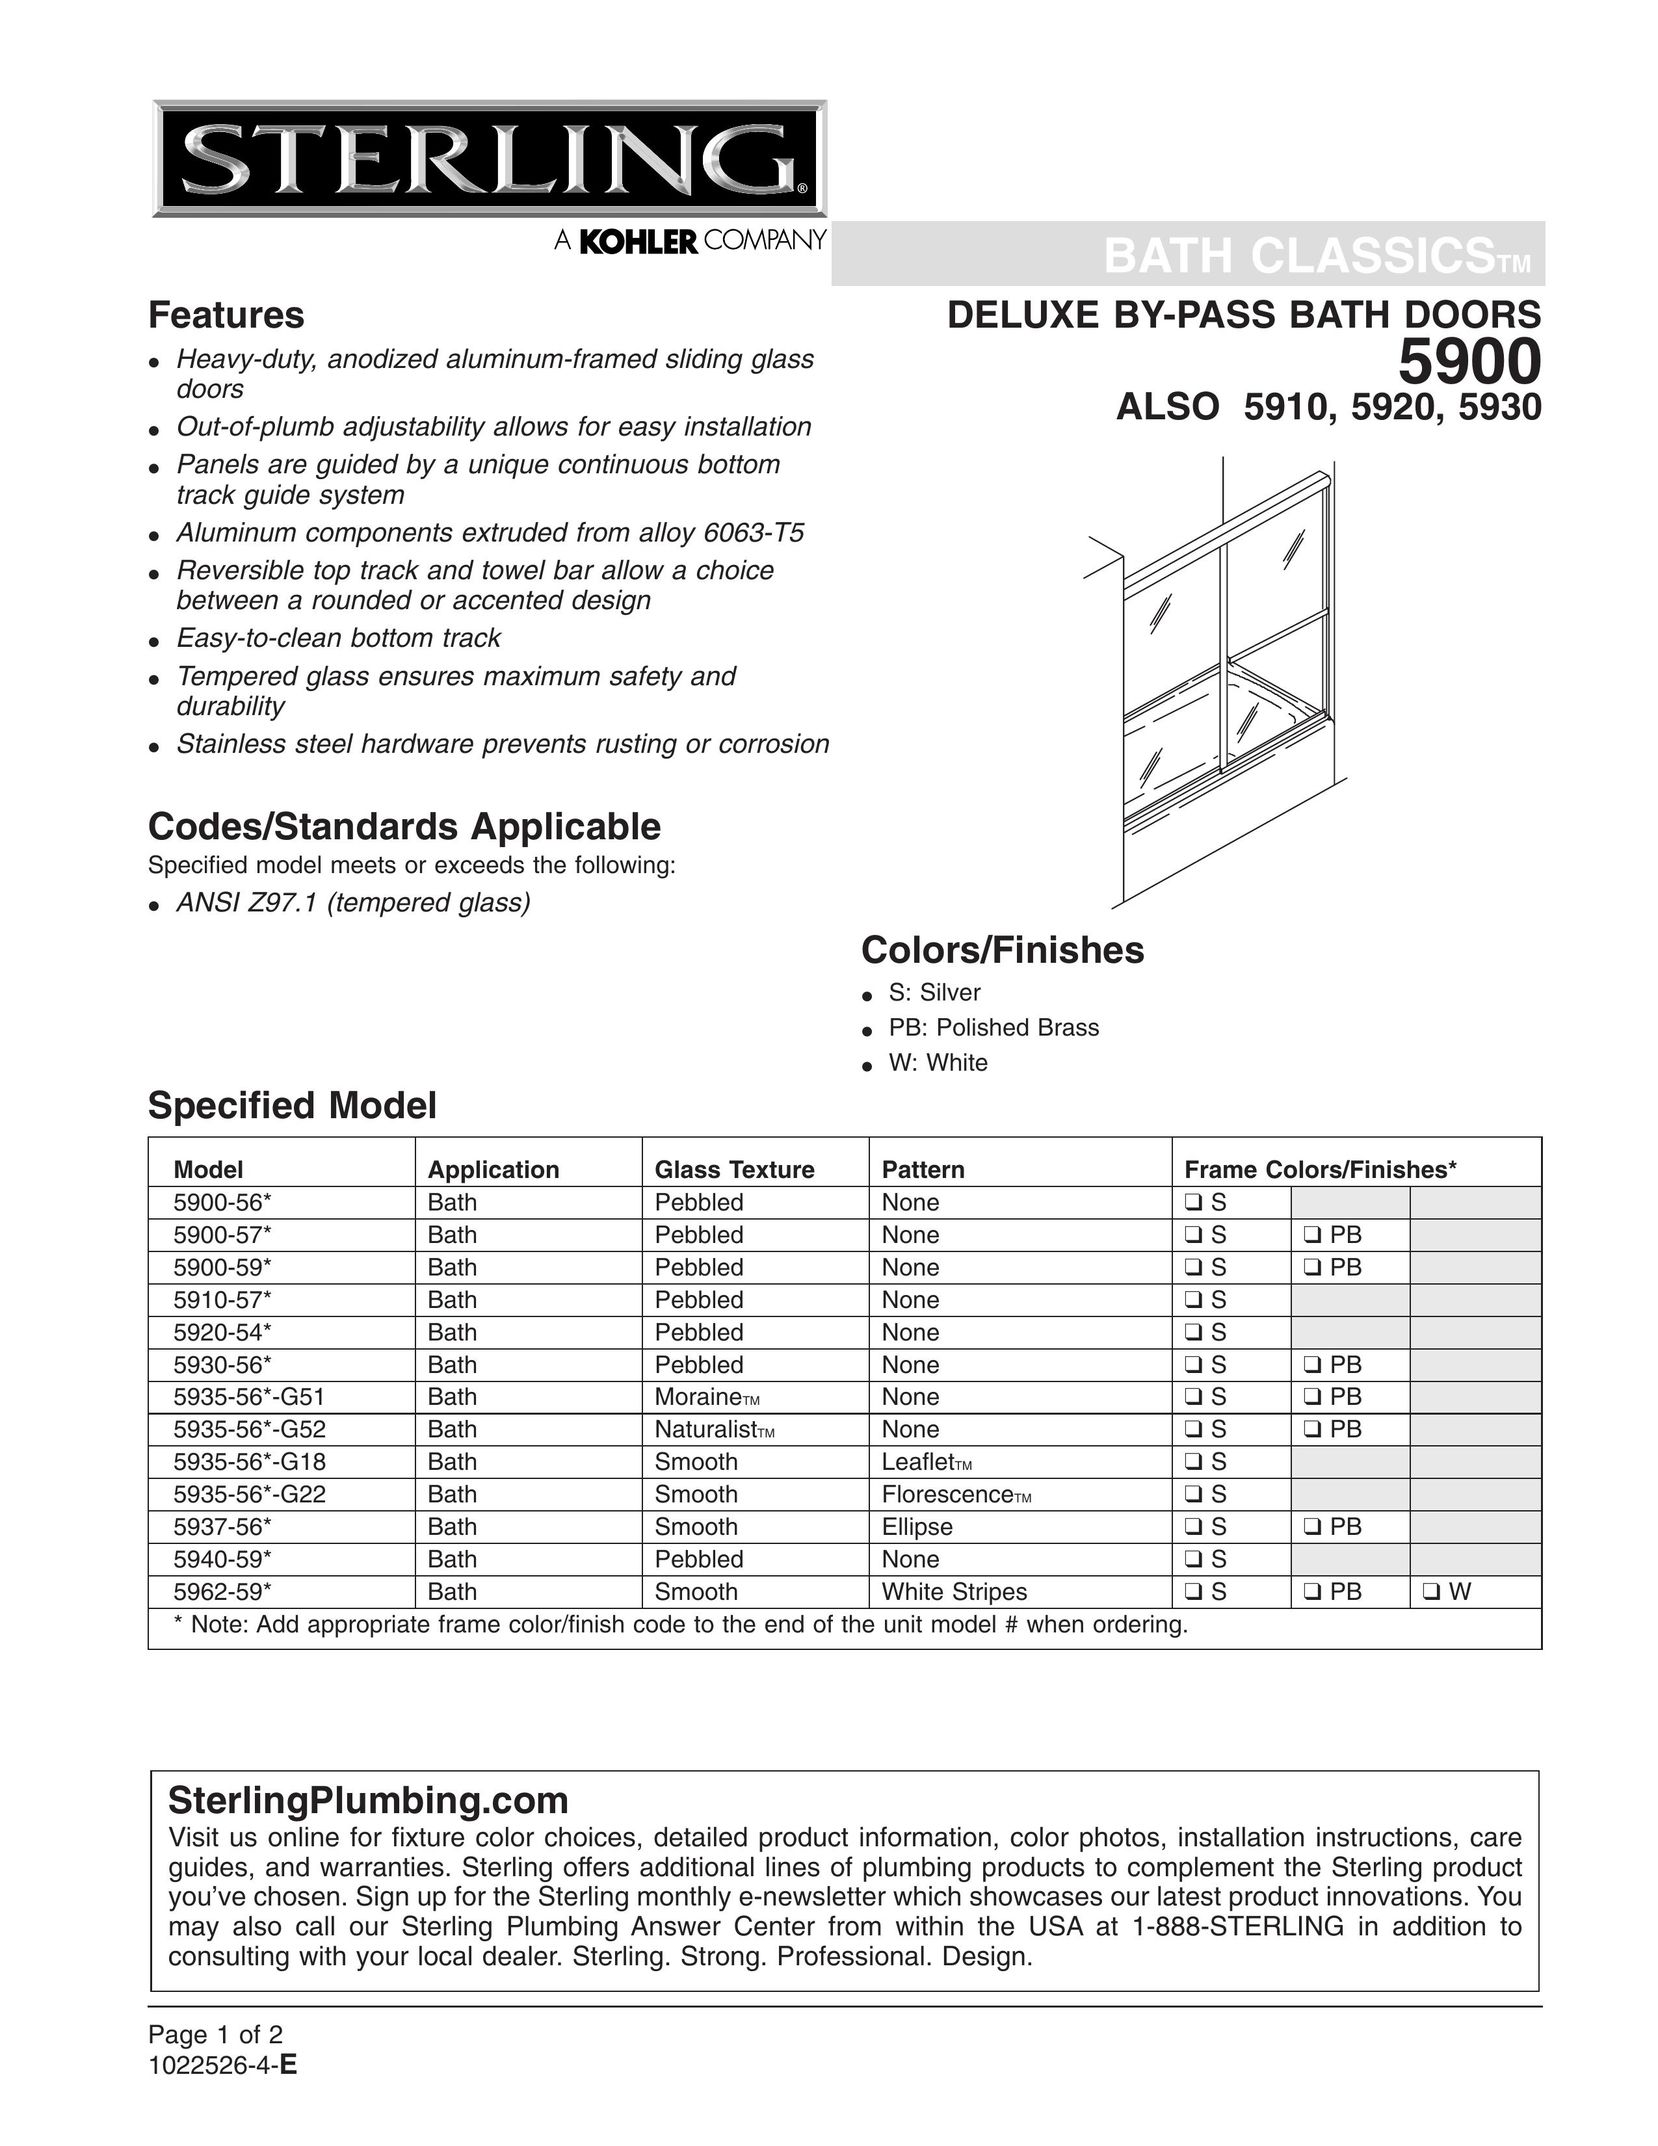 Sterling Plumbing 5935-56*-G52 Door User Manual